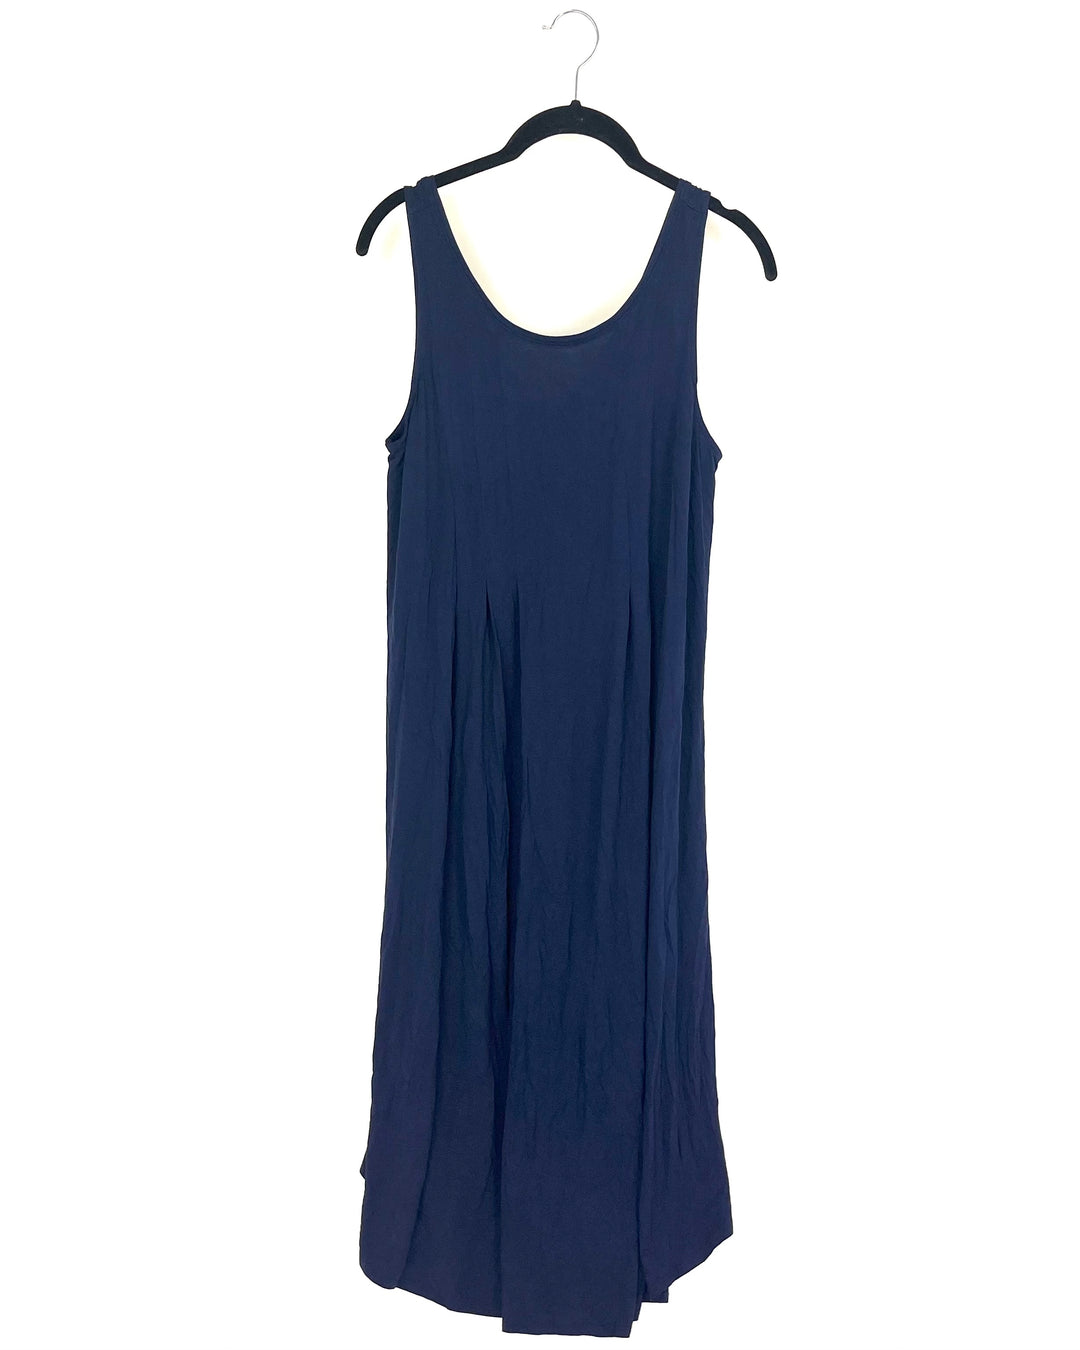 Navy Blue Lounge Dress - Size 6/8